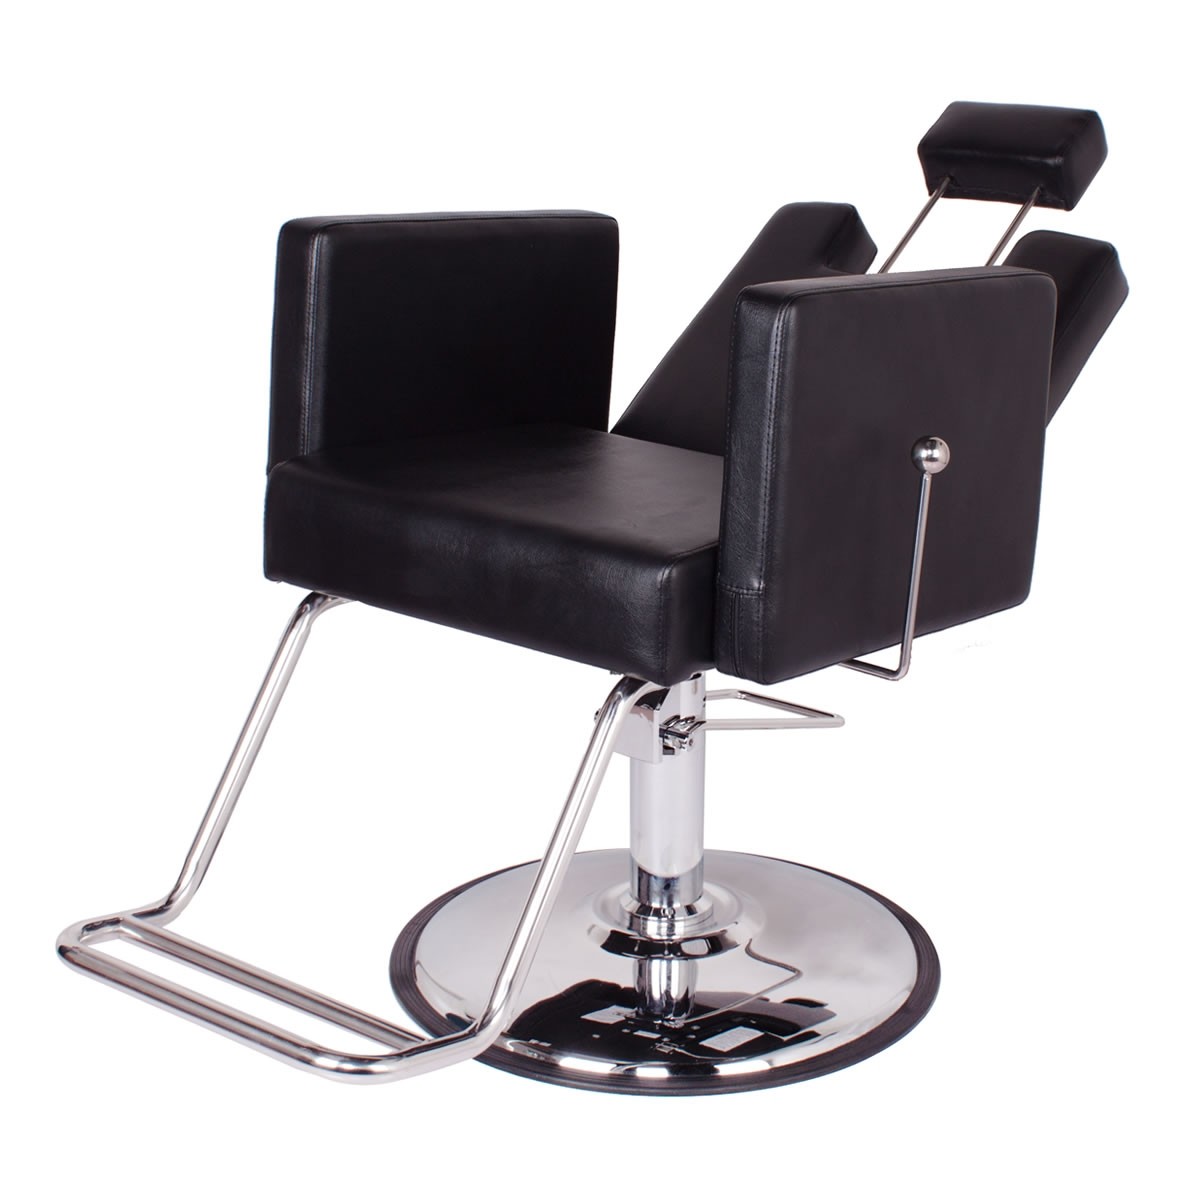 Canon Reclining Salon Chair Reclining Shampoo Chair All Purpose